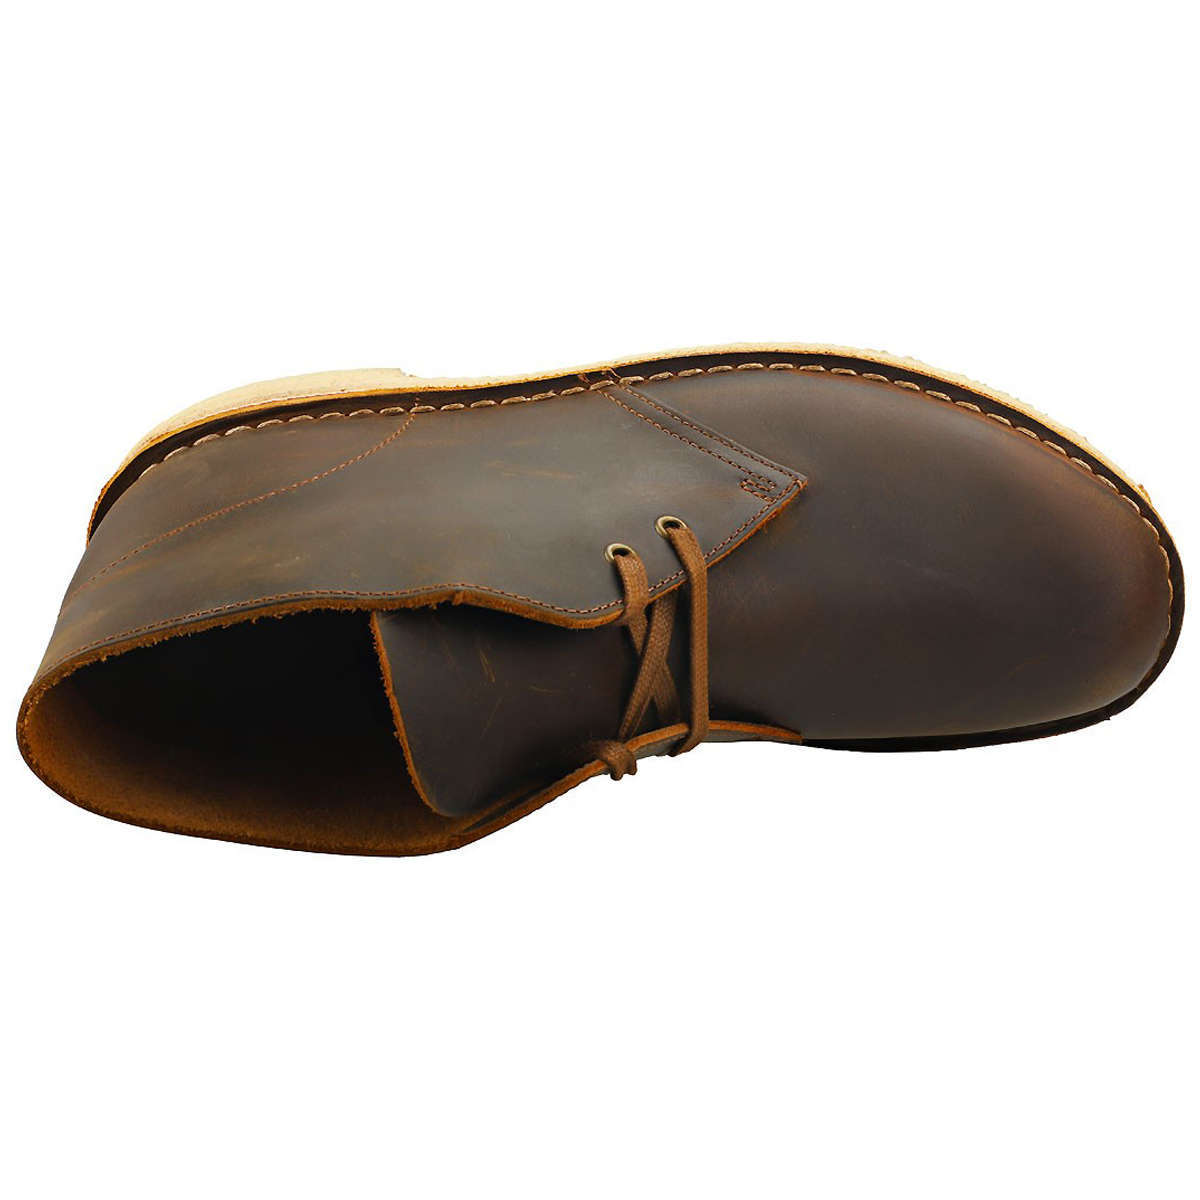 Clarks Originals Desert Boot Leather Men's Boots#color_dark beeswax